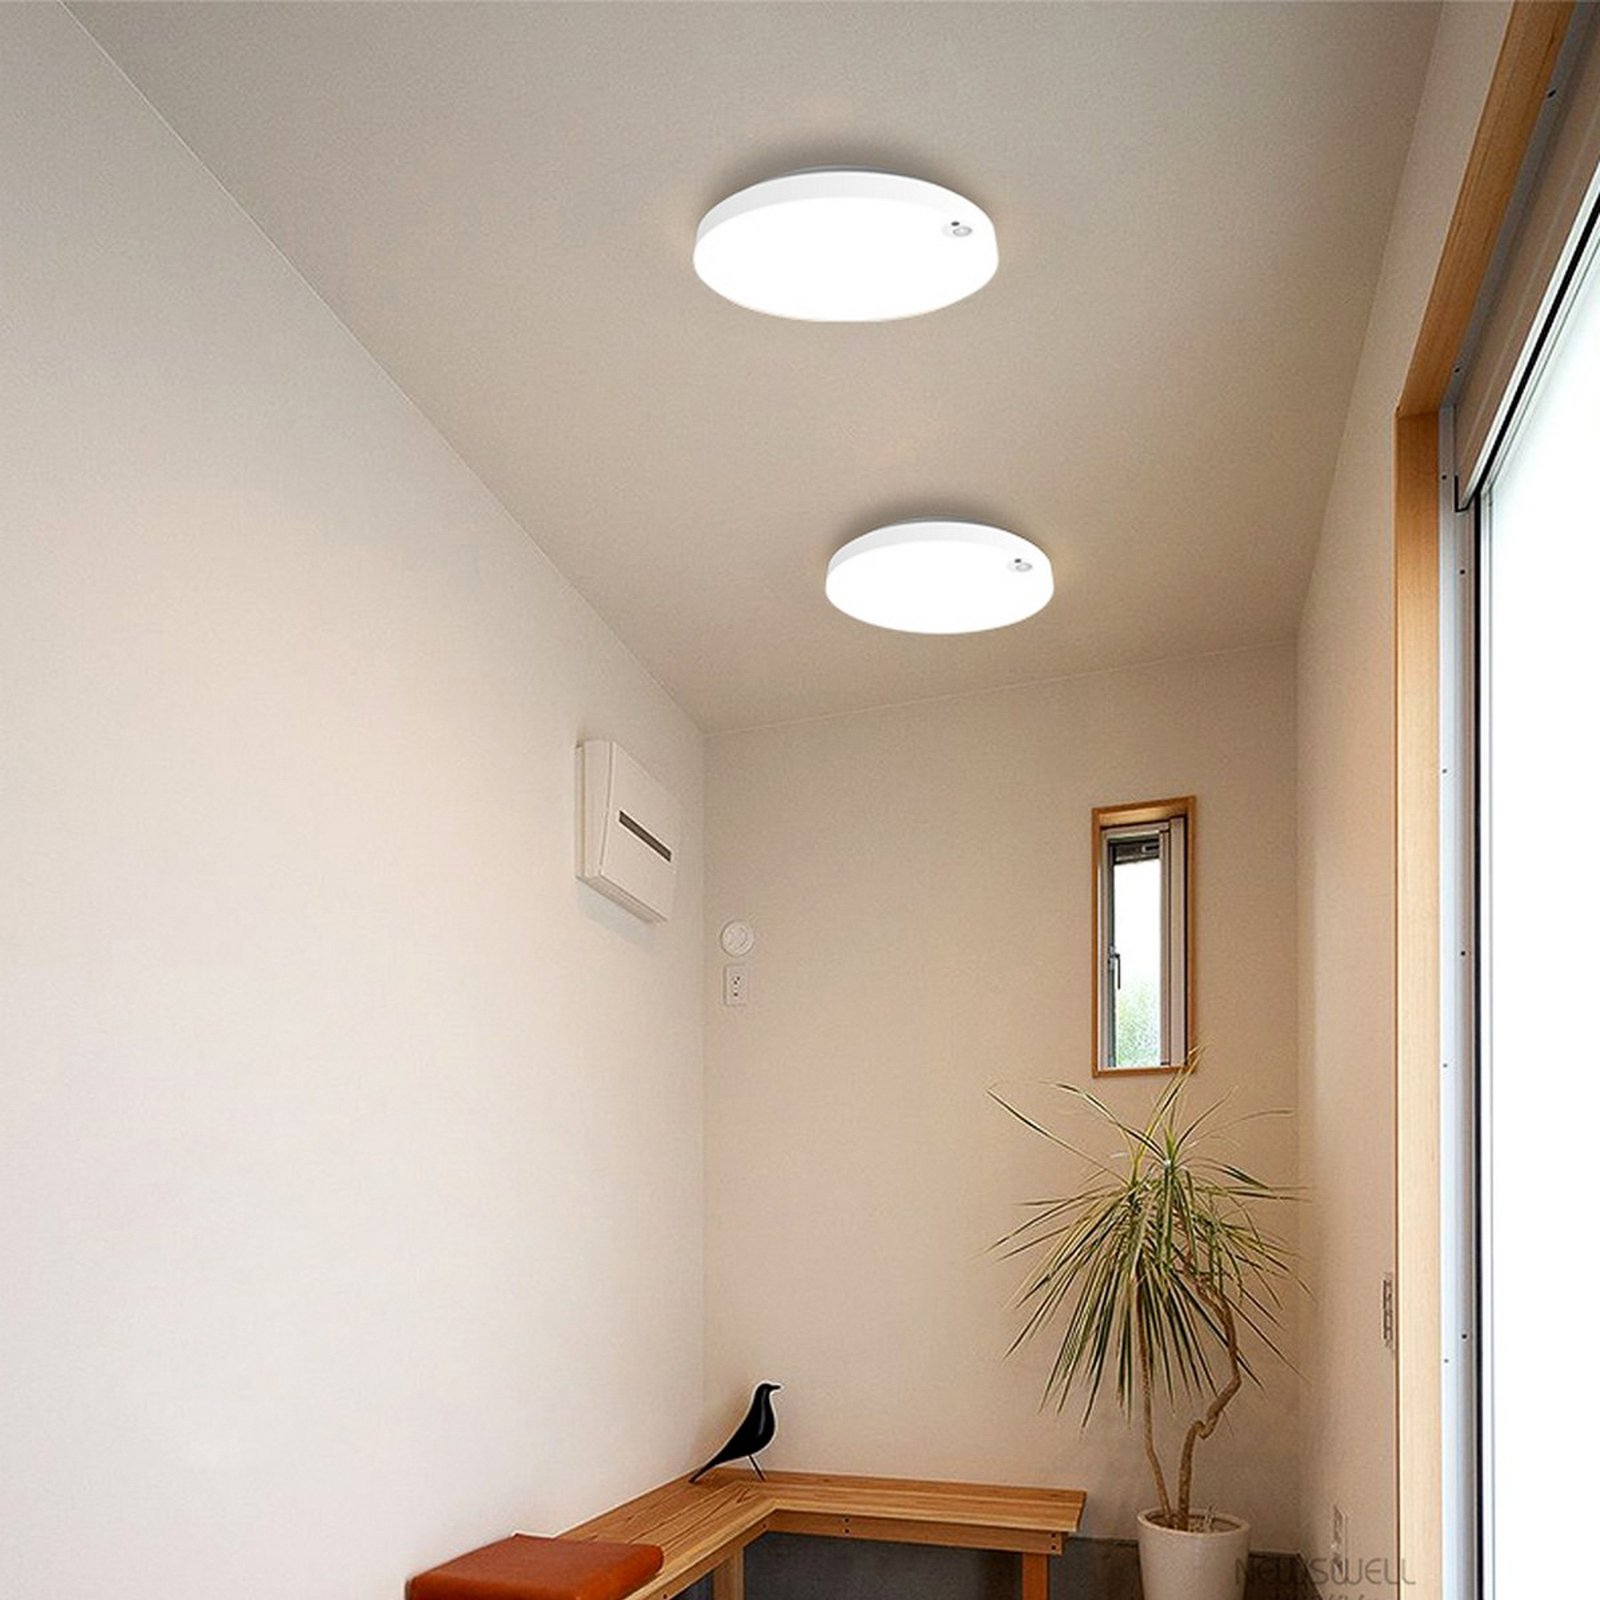 LED plafondlamp Allrounder 1, instelbare lichtkleur, sensor